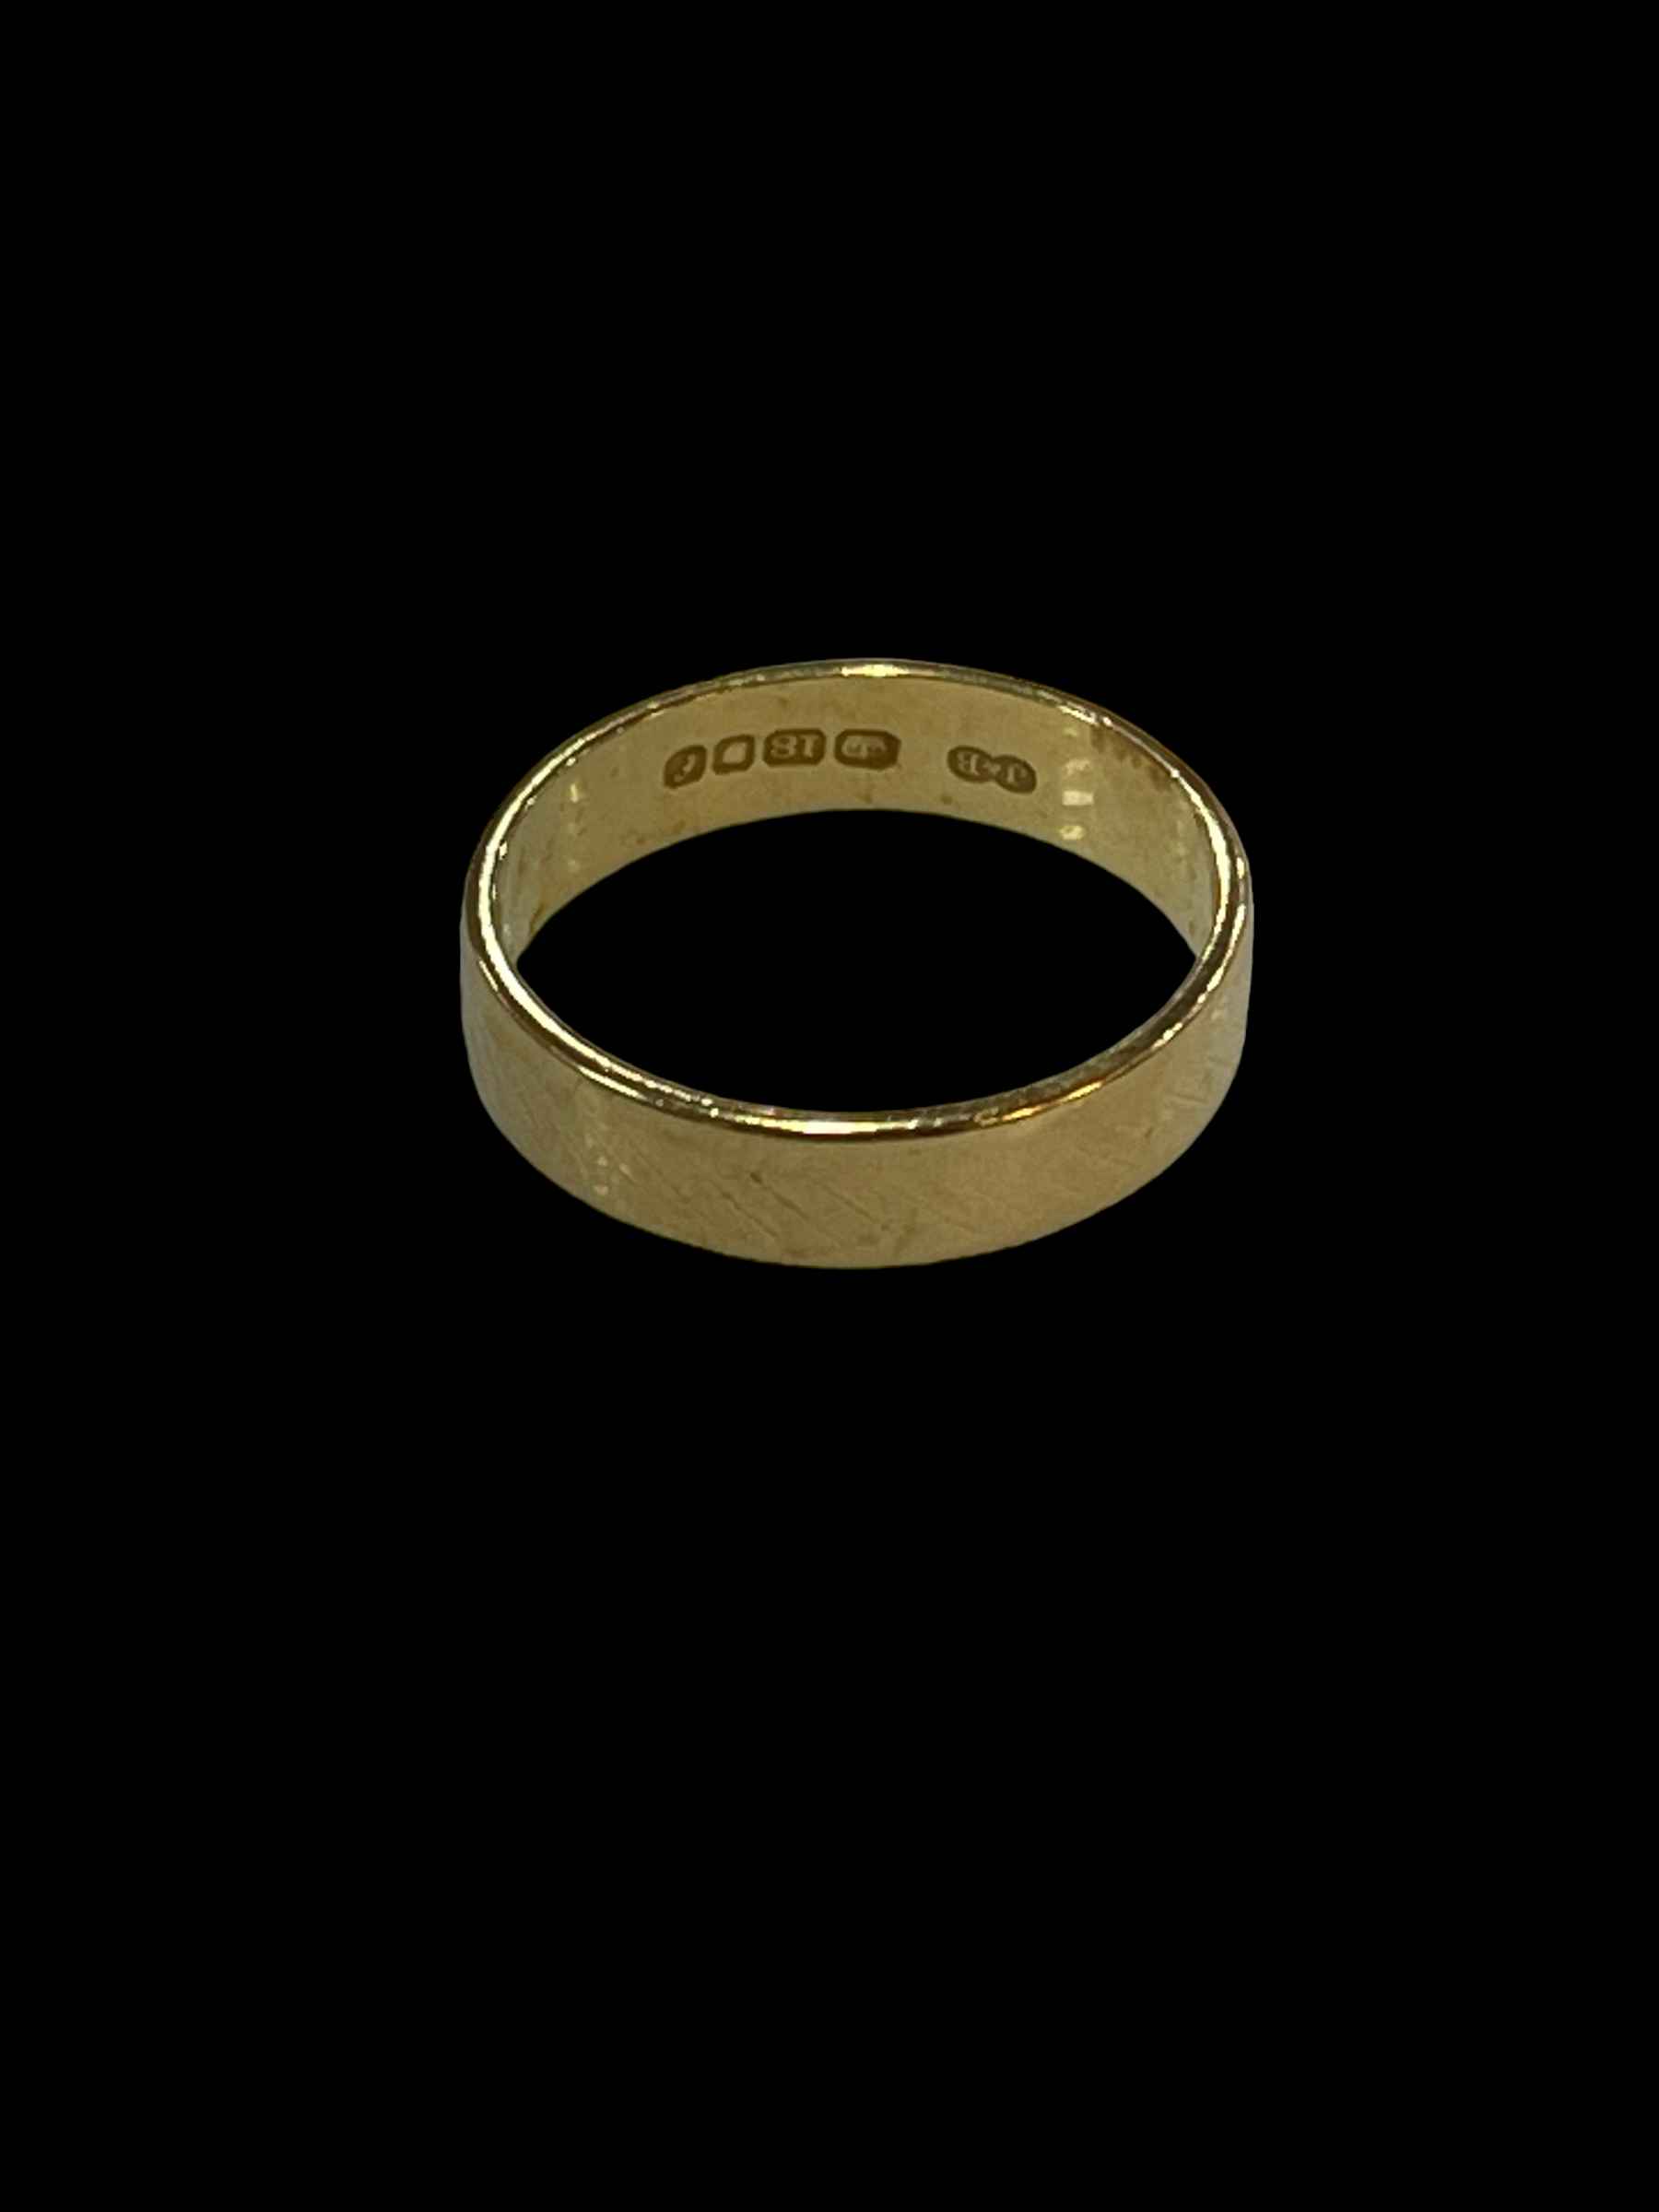 18 carat gold wedding band ring, size M.